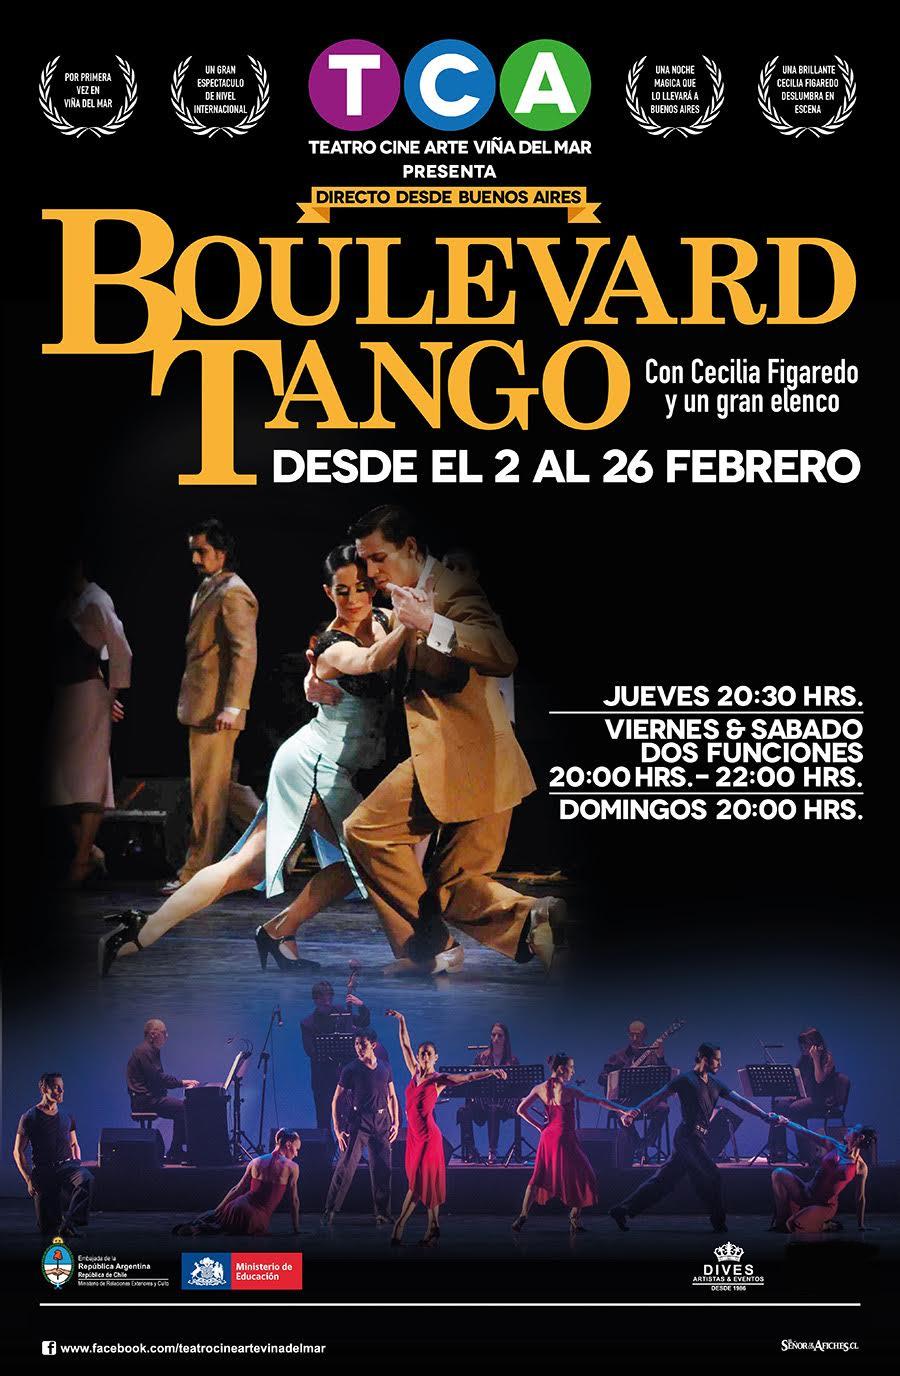 Boulevard Tango - Cecilia Figaredo y gran elenco